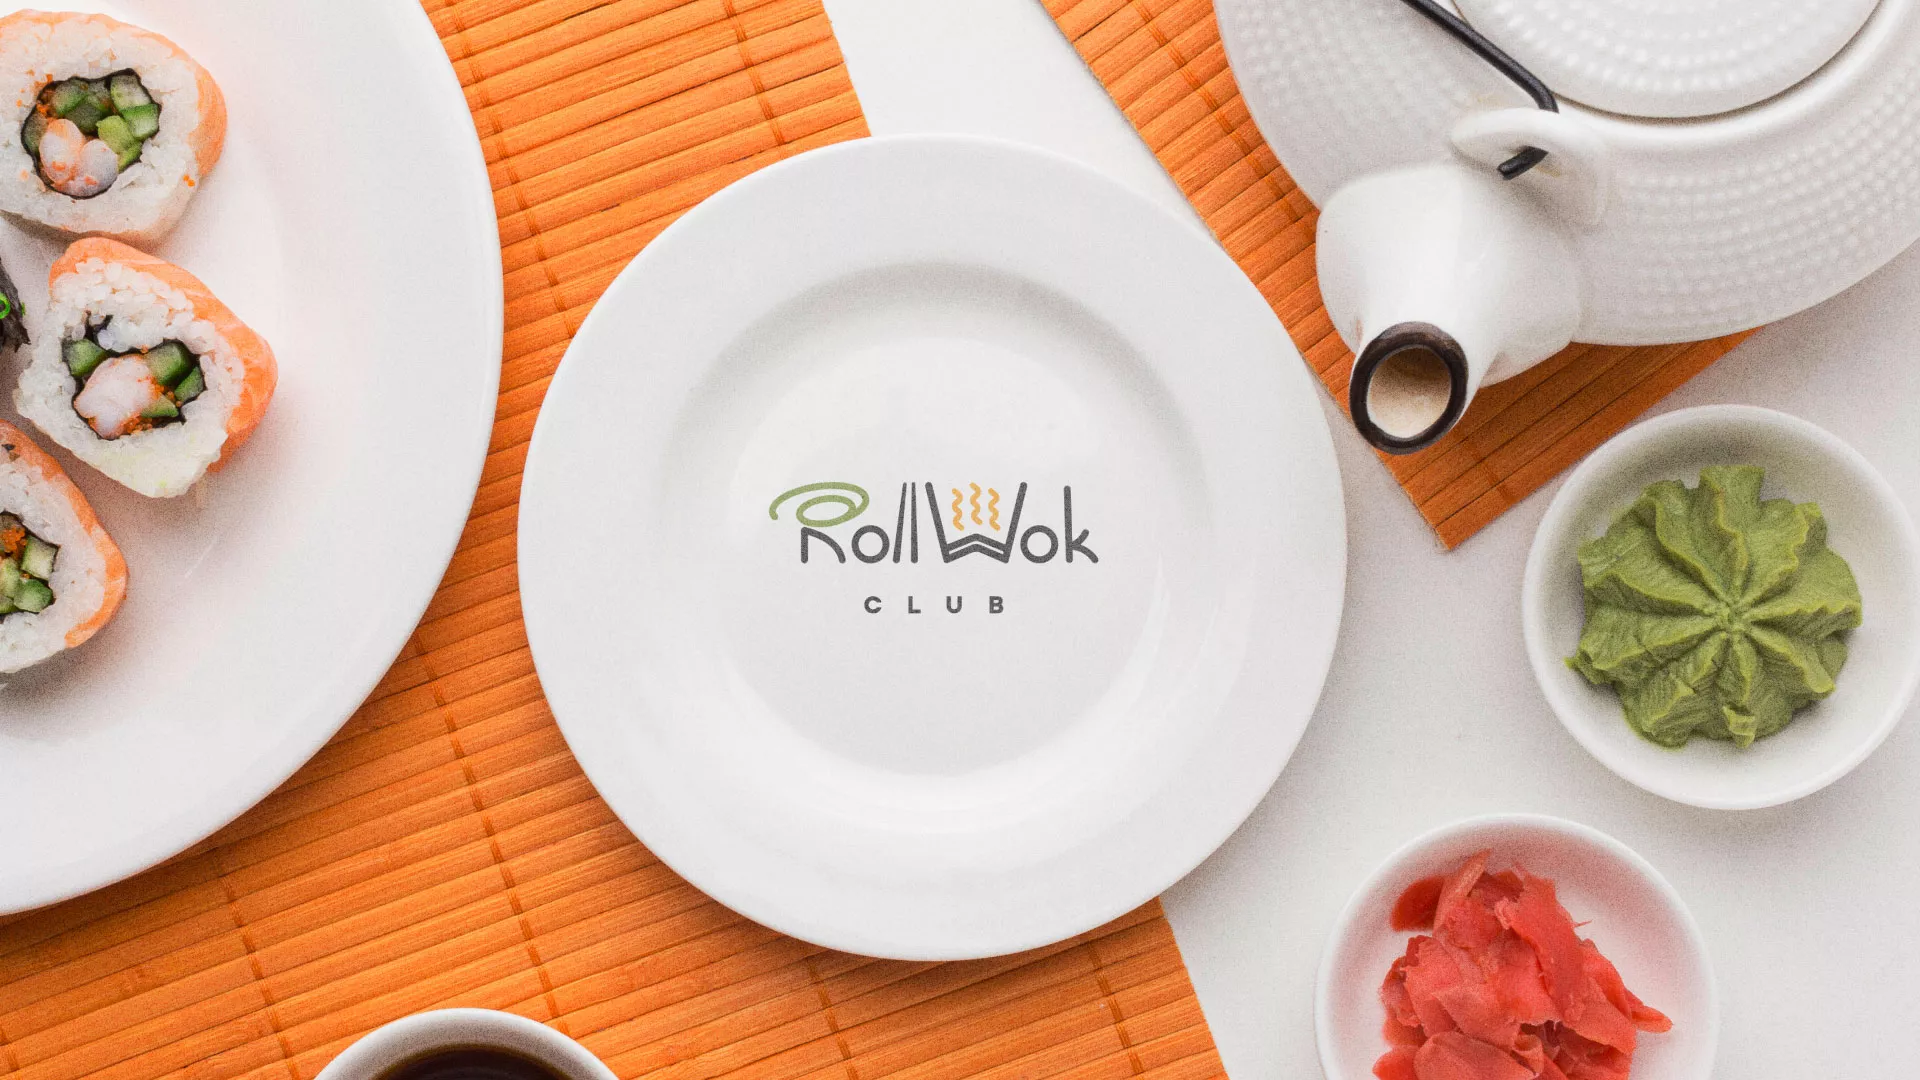 Разработка логотипа и фирменного стиля суши-бара «Roll Wok Club» в Горбатове